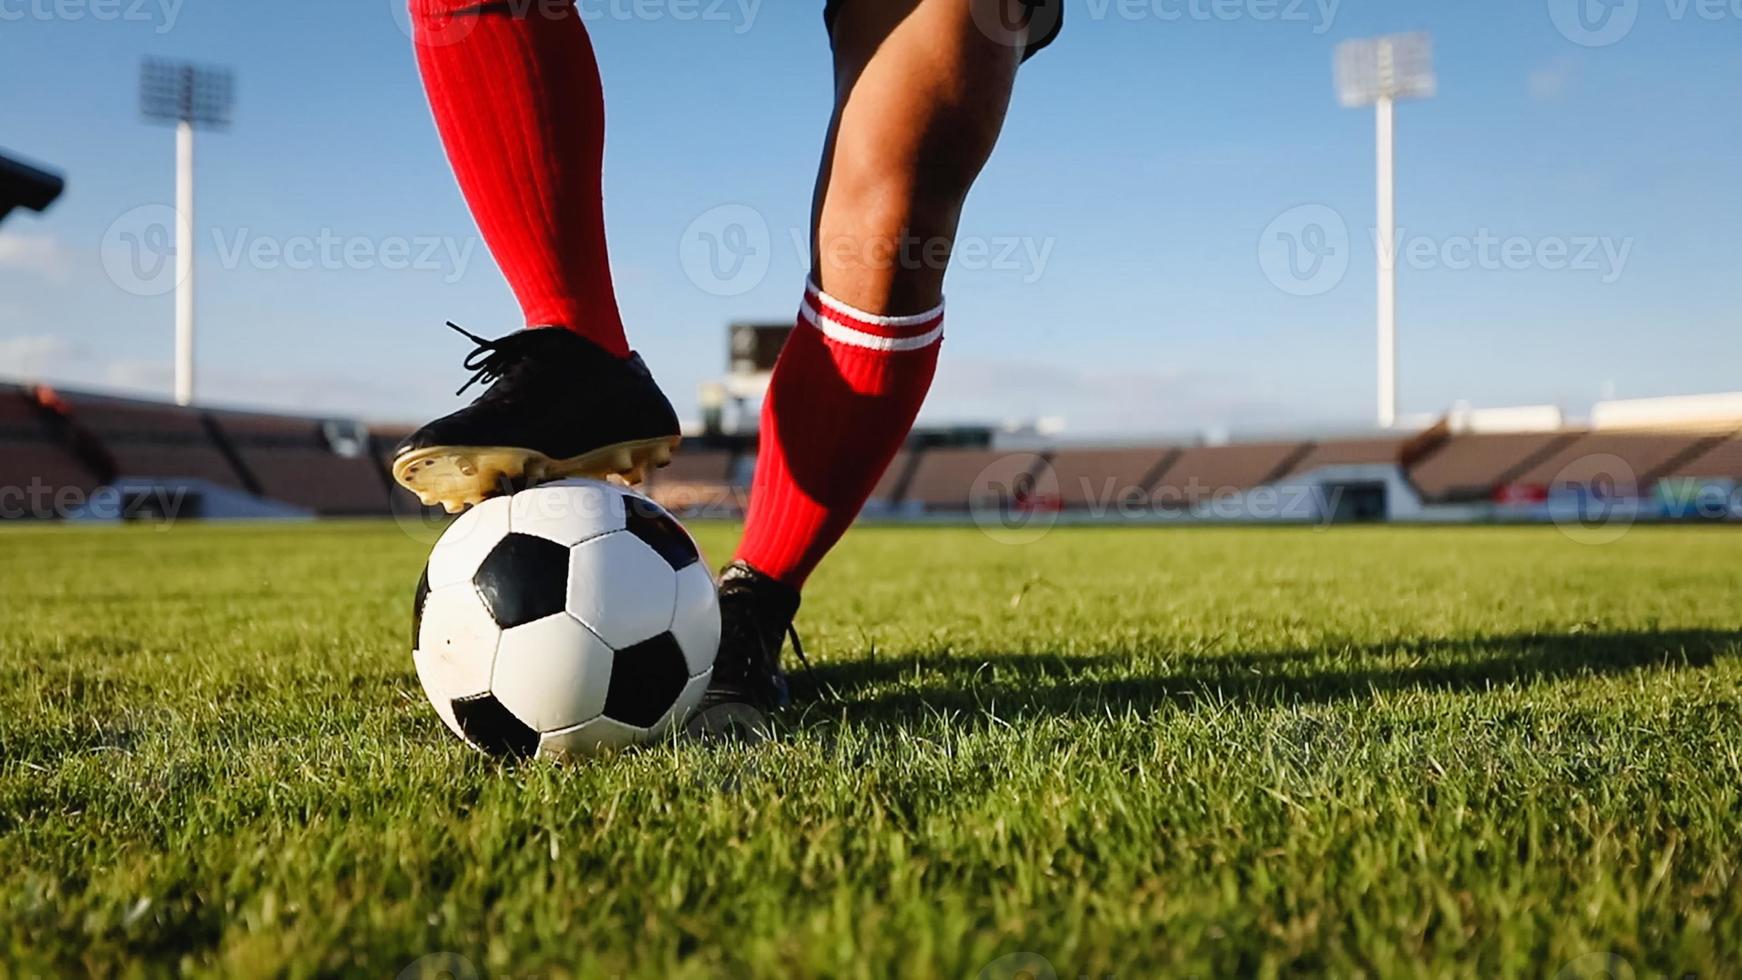 fotboll eller fotbollsspelare står med bollen på fältet för sparka fotboll på fotbollsstadion foto